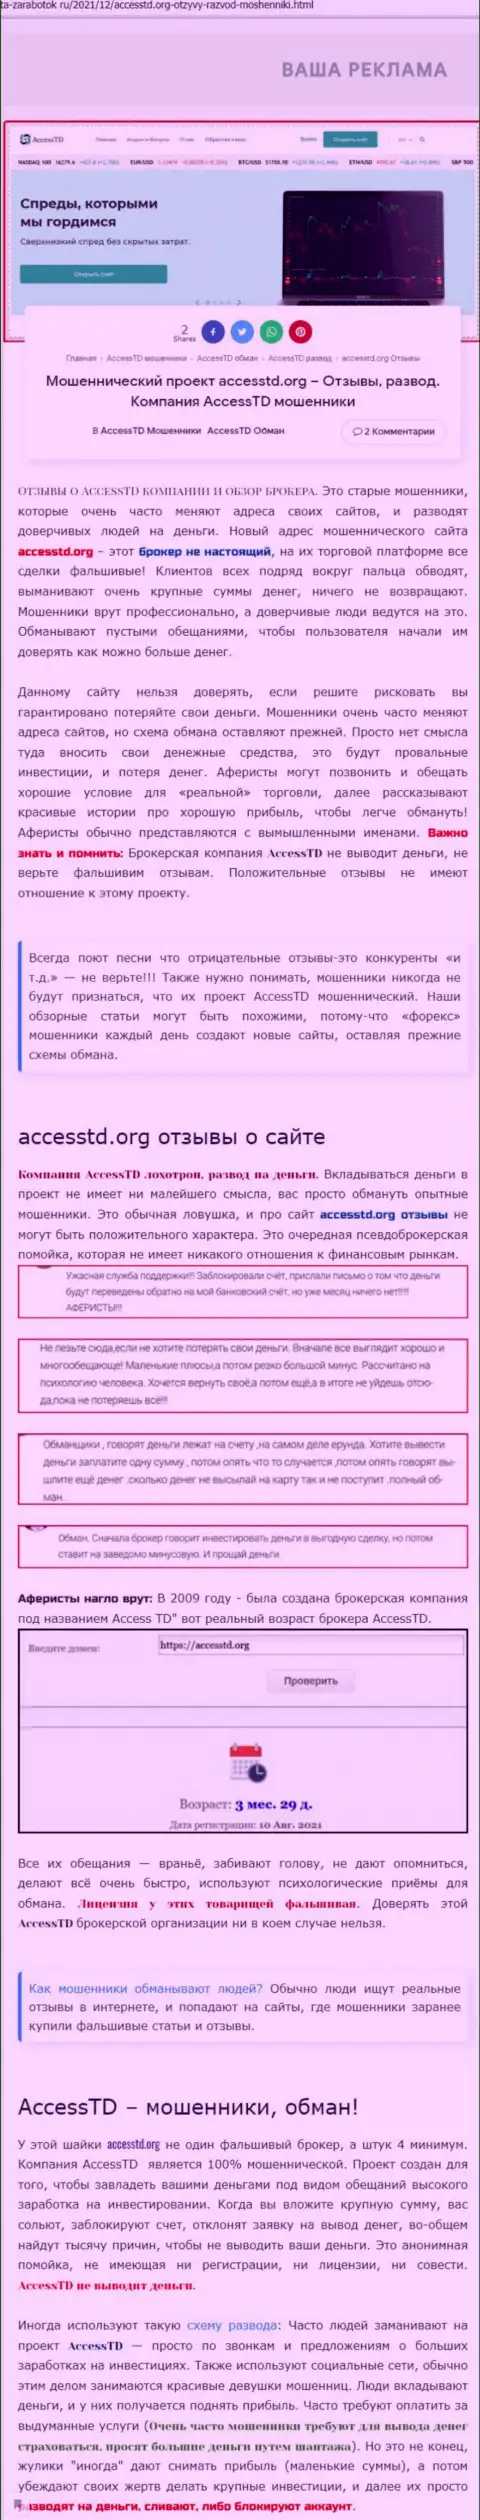 AccessTD - это ШУЛЕРА !!! Обзор организации и отзывы пострадавших